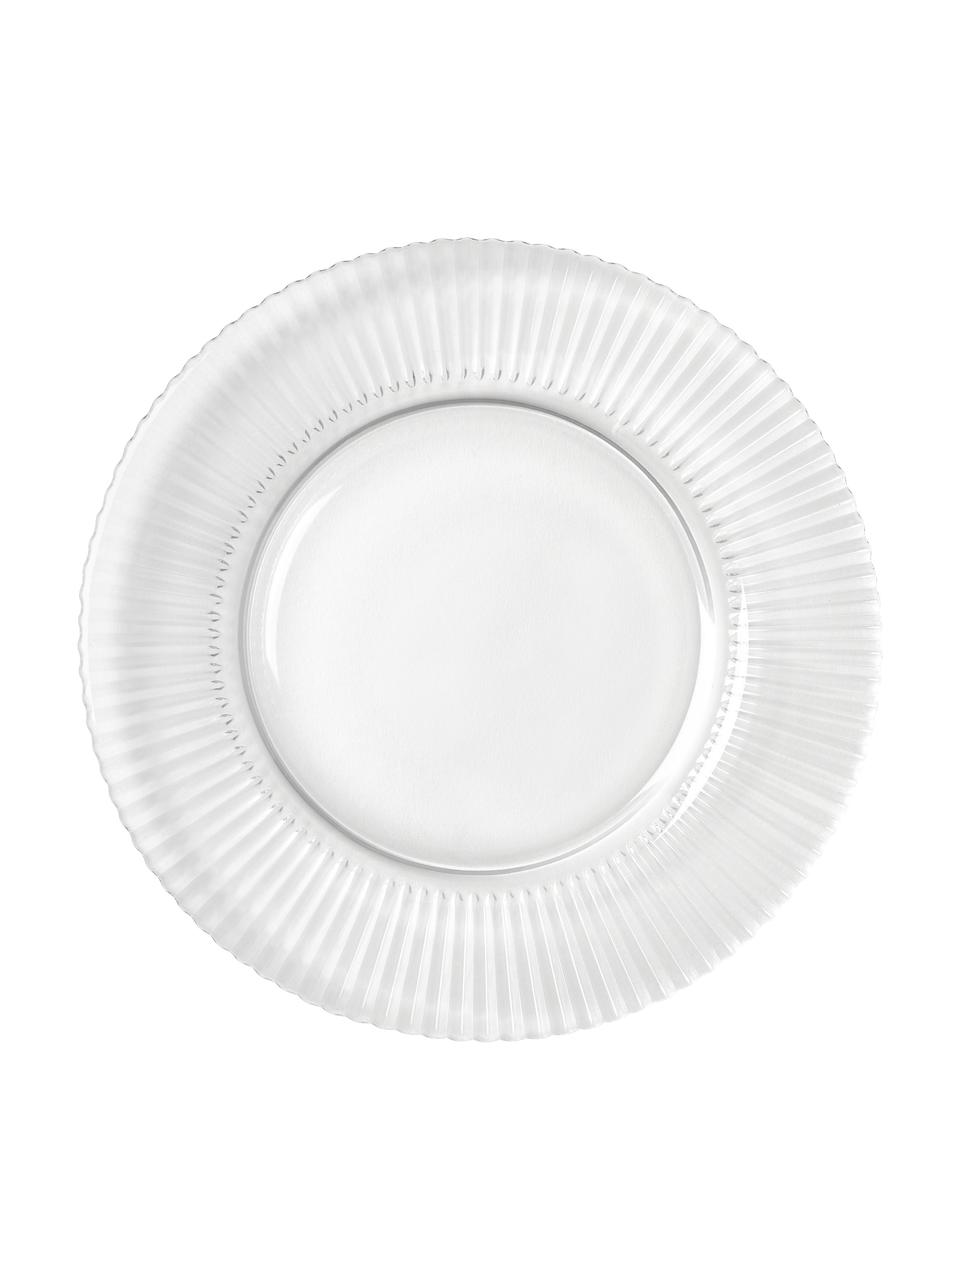 Piatto da colazione con rilievo scanalato Effie 4 pz, Vetro, Trasparente, Ø 21 cm